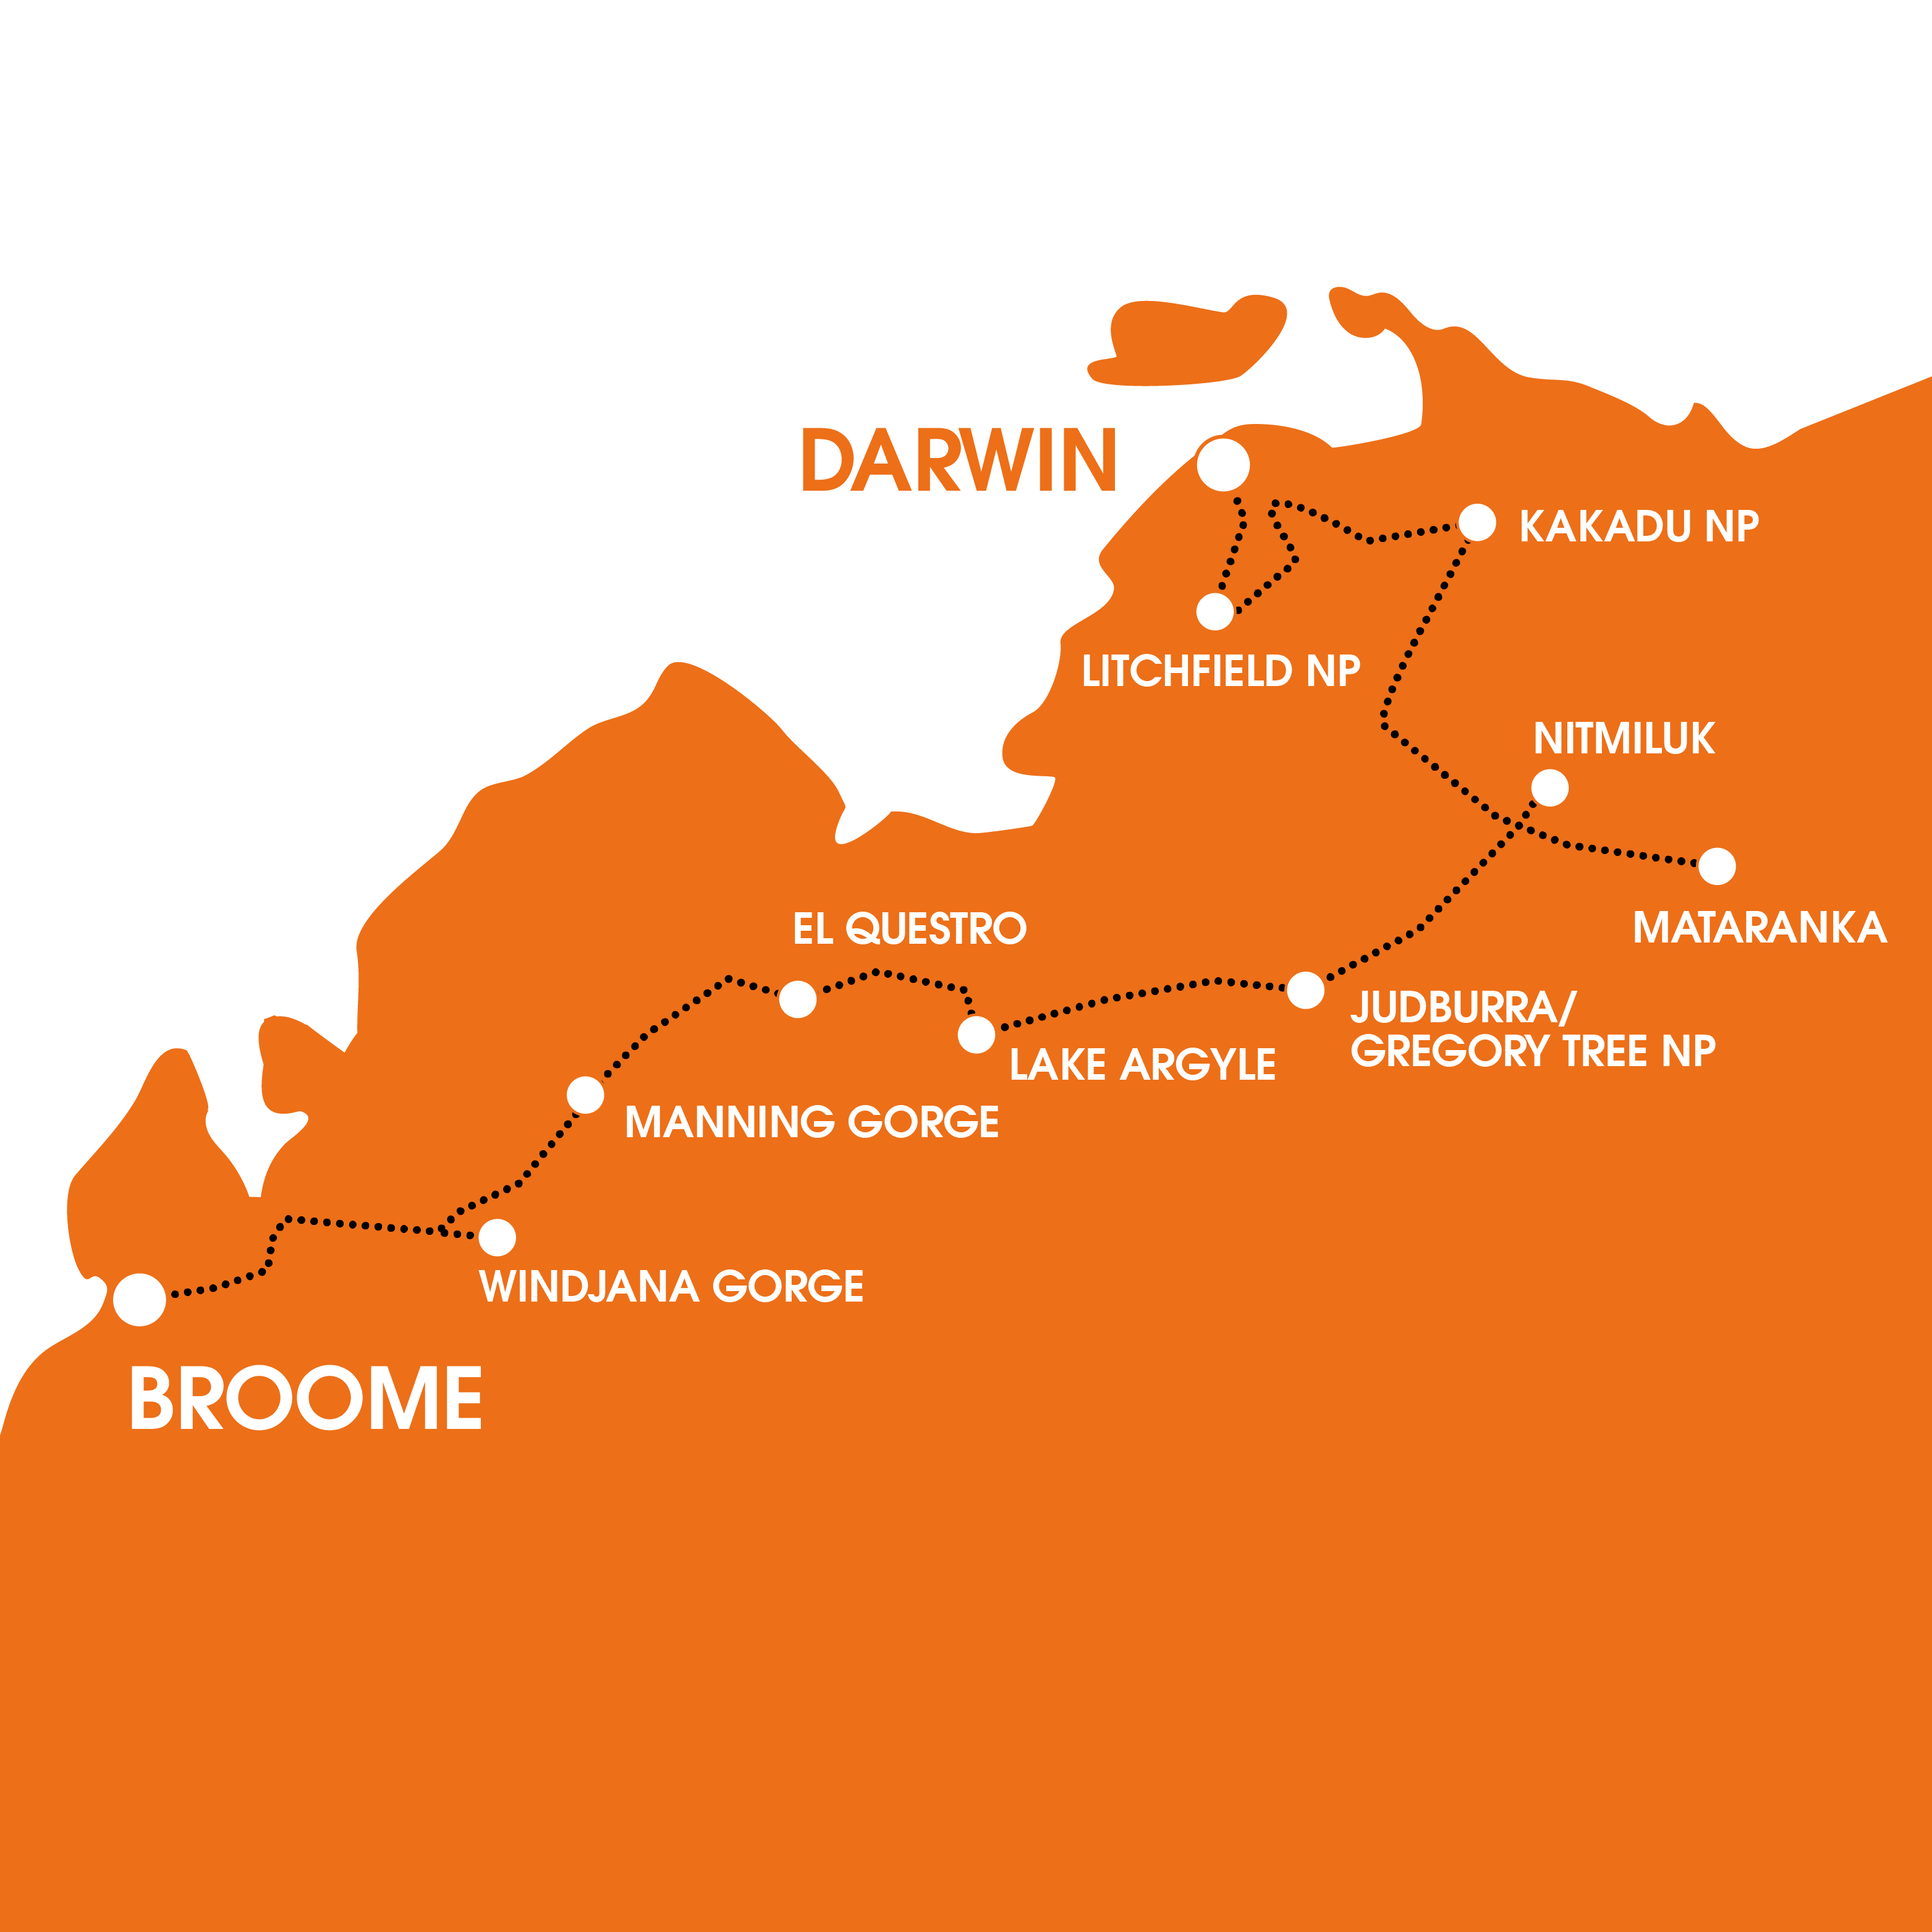 bus trip darwin to broome